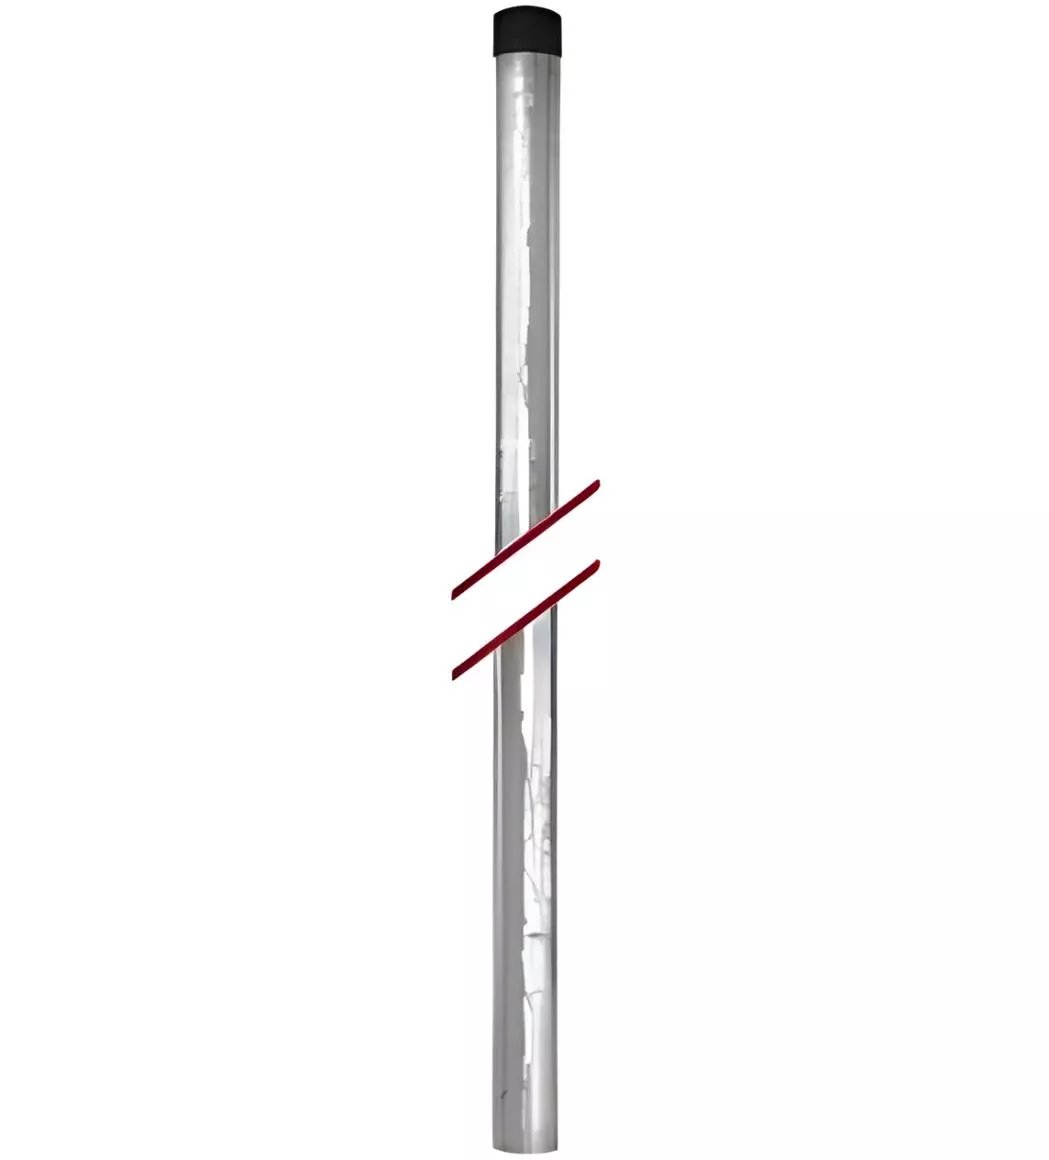 Antennenmast Stahl verzinkt 2m Ø48mm-Artikelnummer-068 001 30-von-Diverse